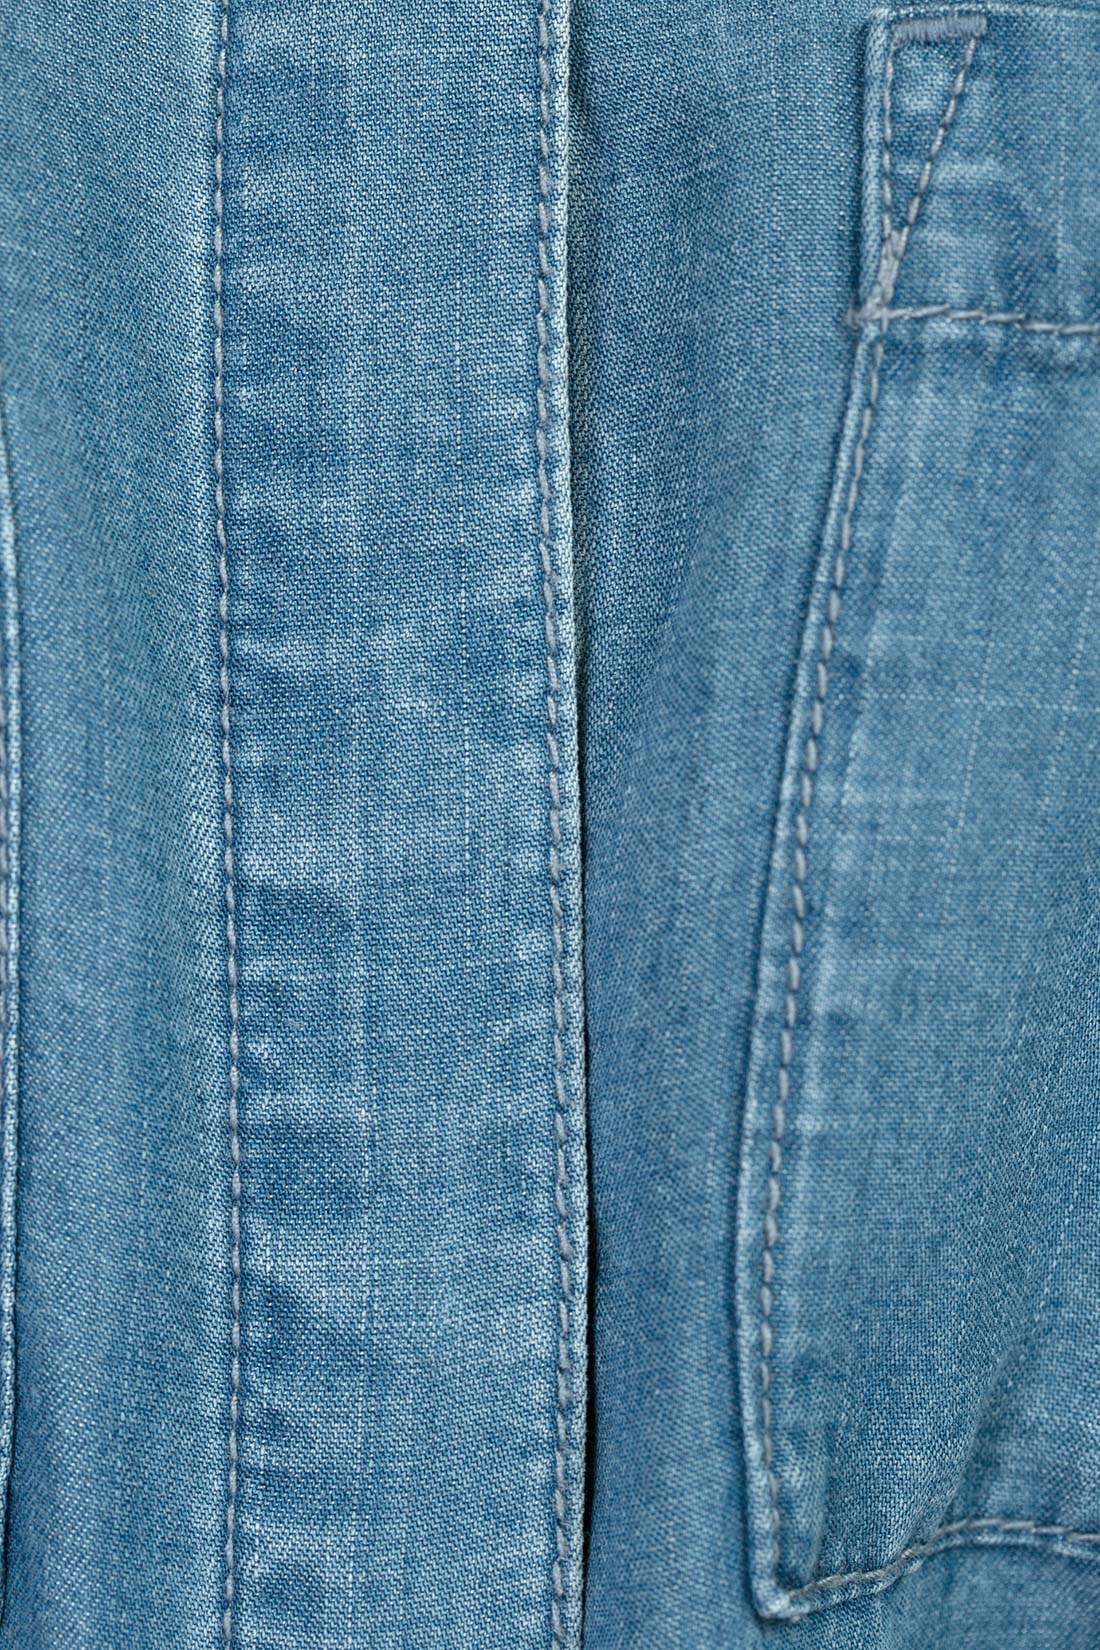 Платье-рубашка из денима (арт. baon B457088), размер L, цвет blue denim#голубой Платье-рубашка из денима (арт. baon B457088) - фото 4